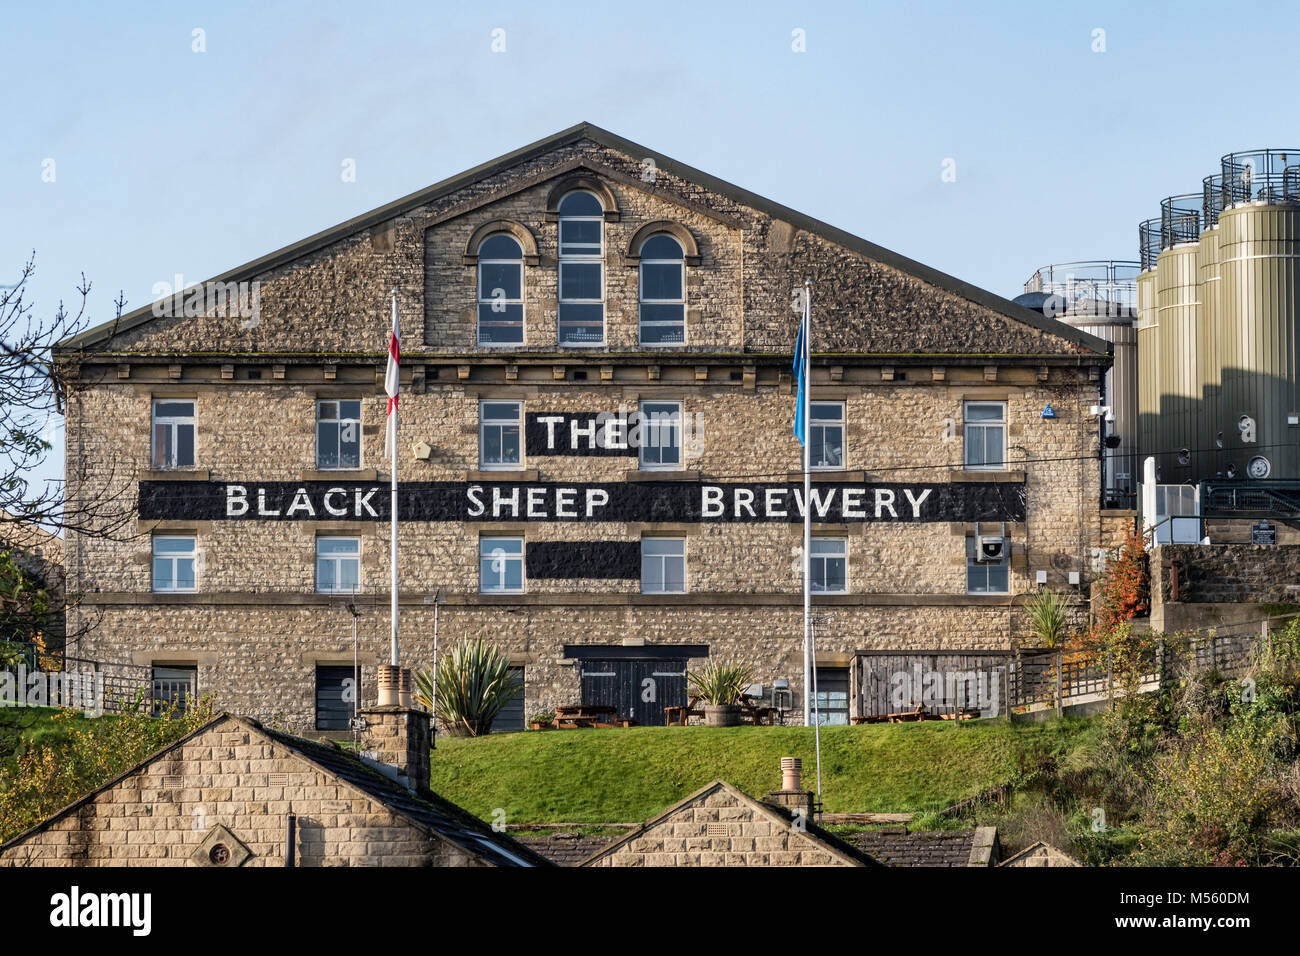 The Black Sheep Brewery at Masham Stock Photo